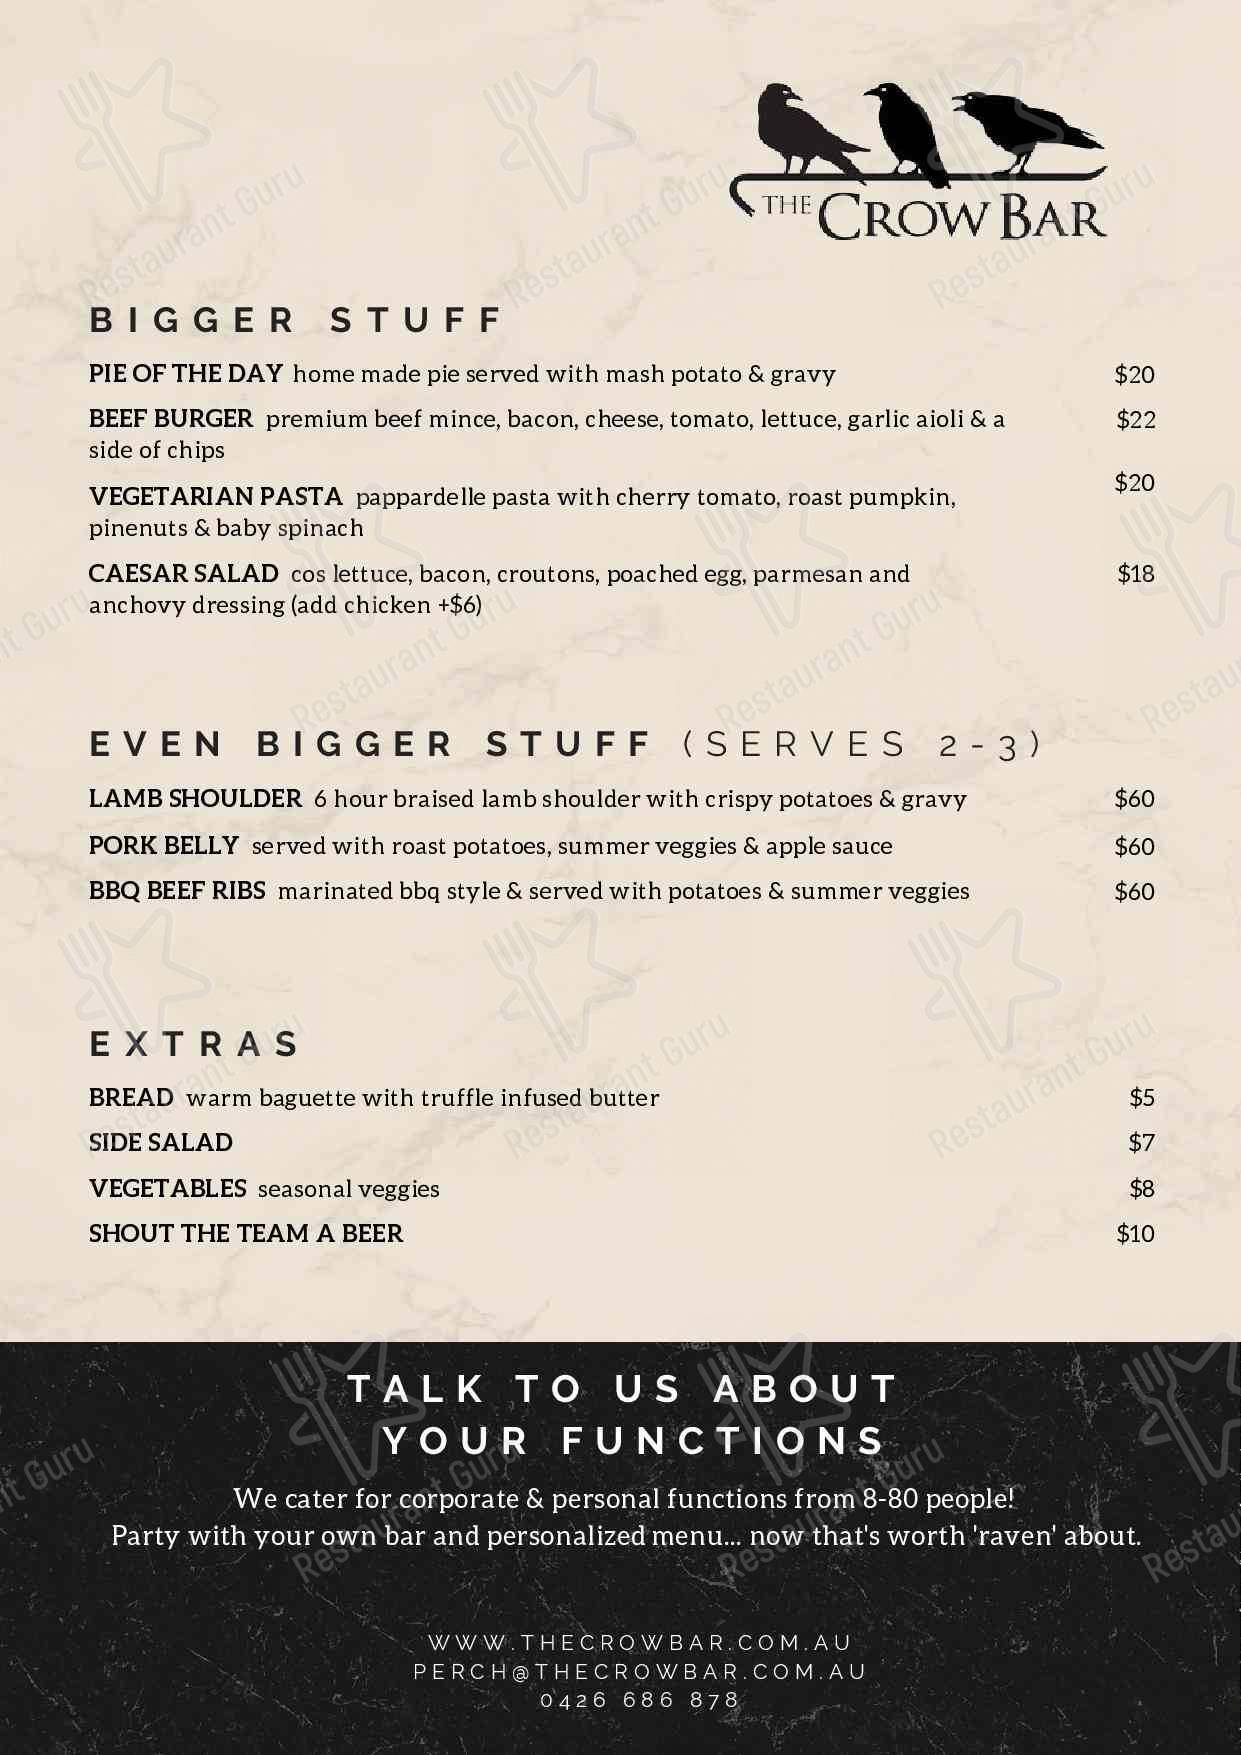 The Crow Bar menu